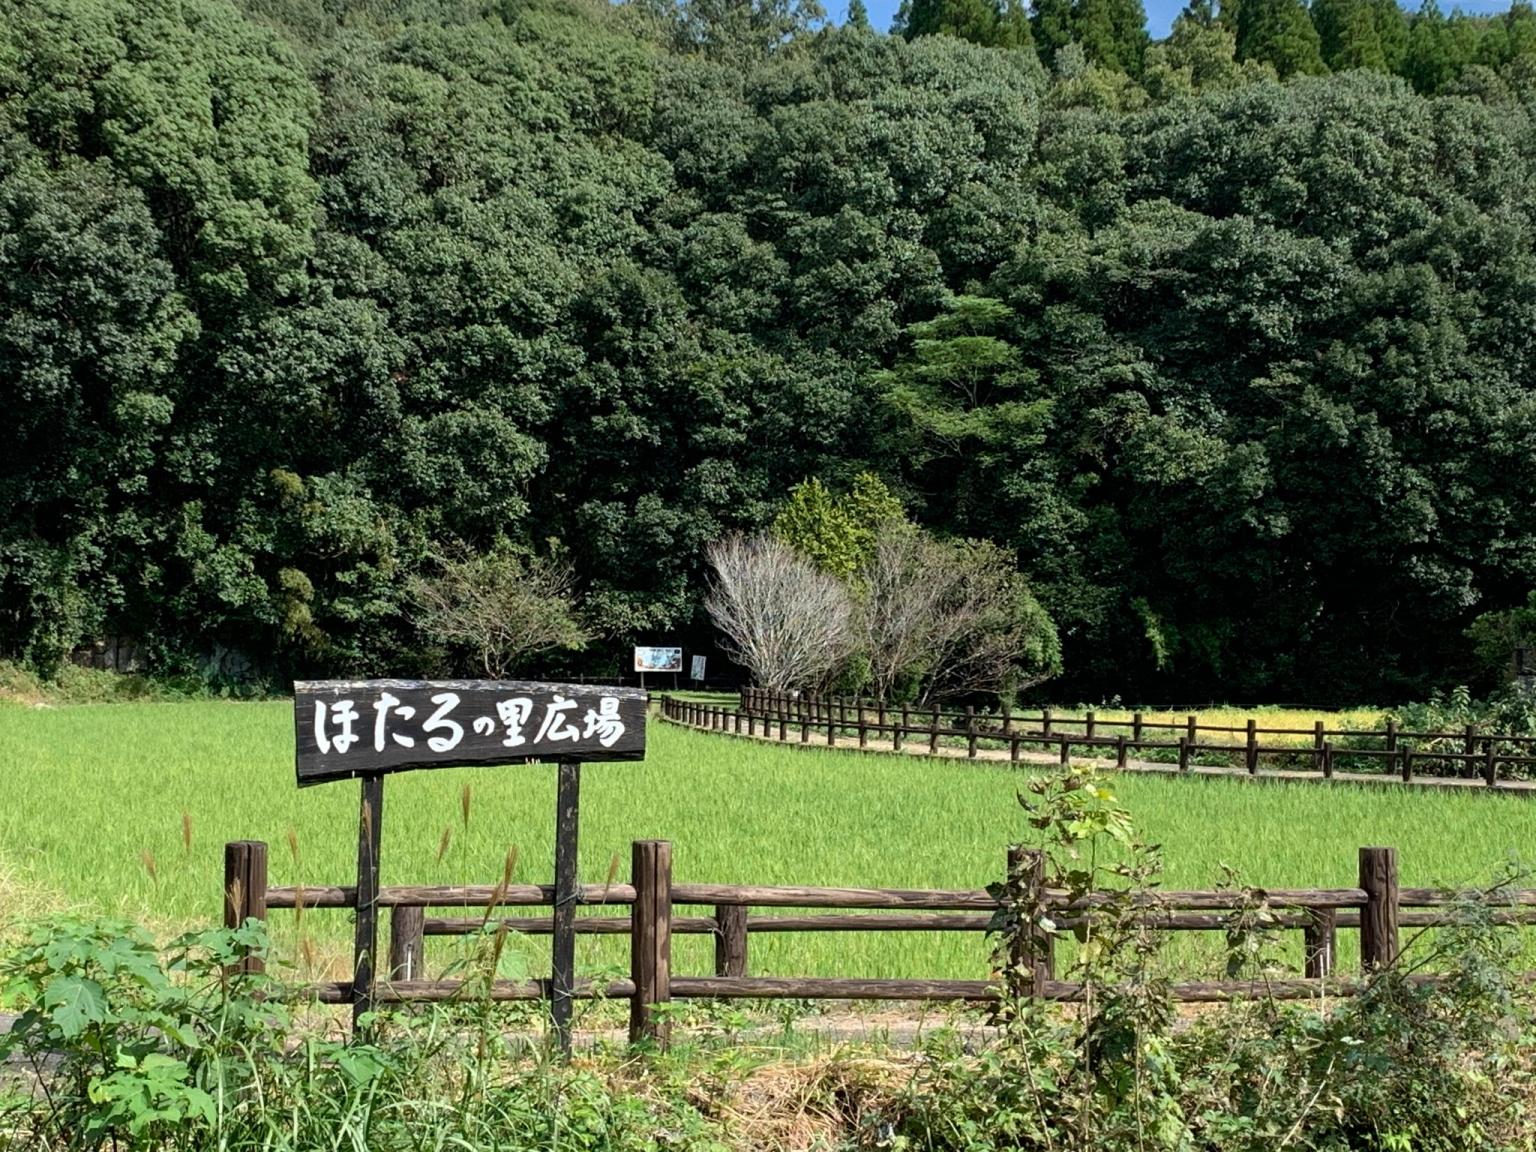 ホタルの里公園 公式 熊本県温泉サイト くまもっと湯美人